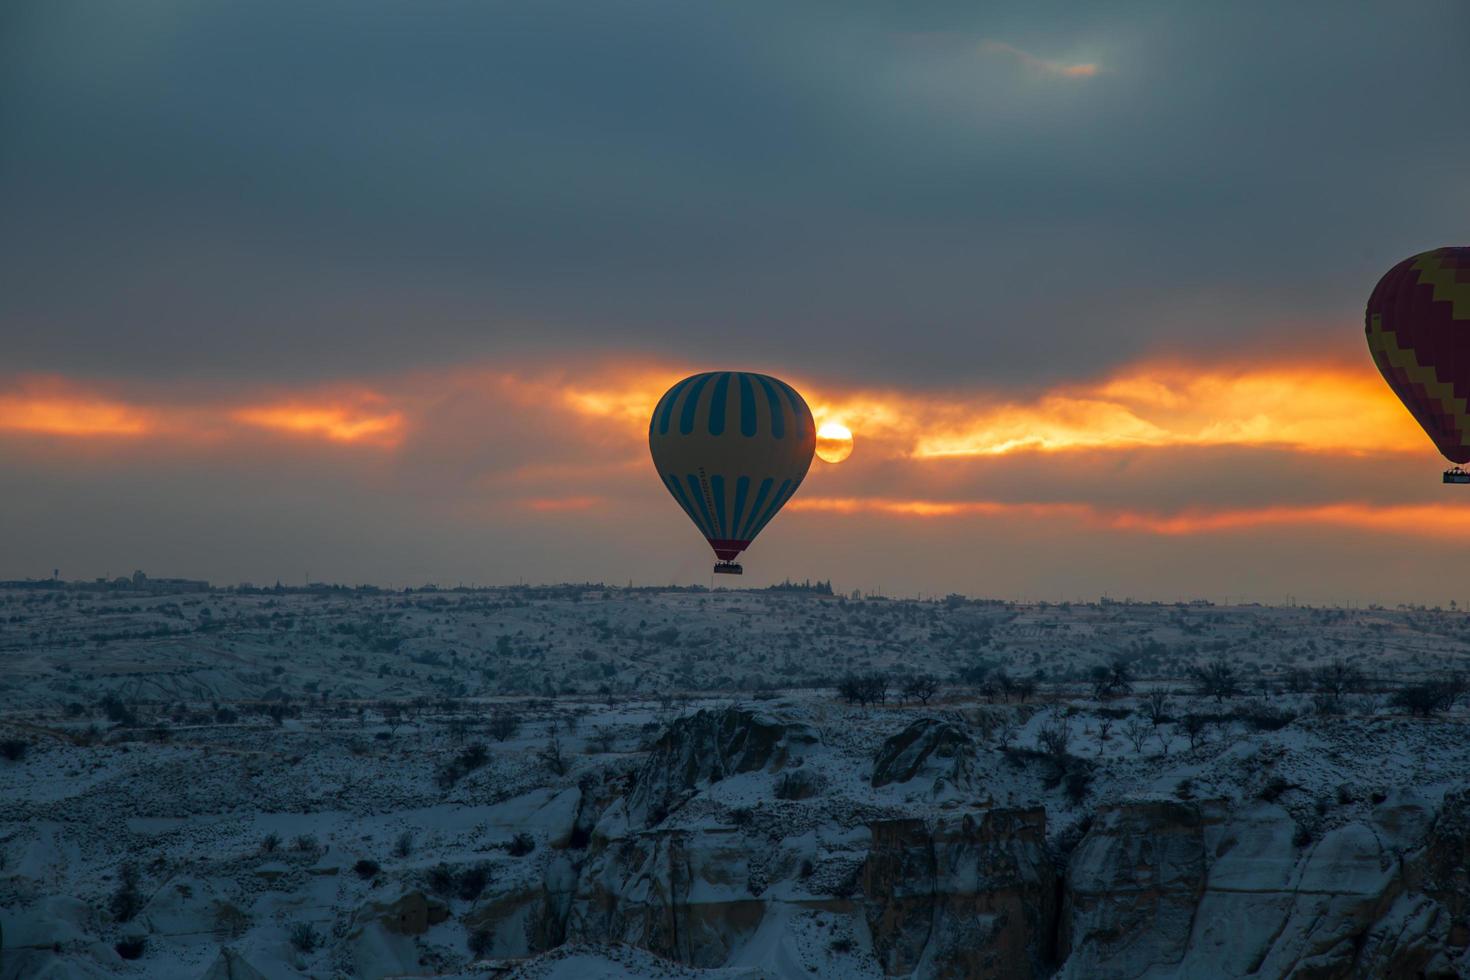 cappadoce, turquie, 2021 - montgolfières survolant la cappadoce photo